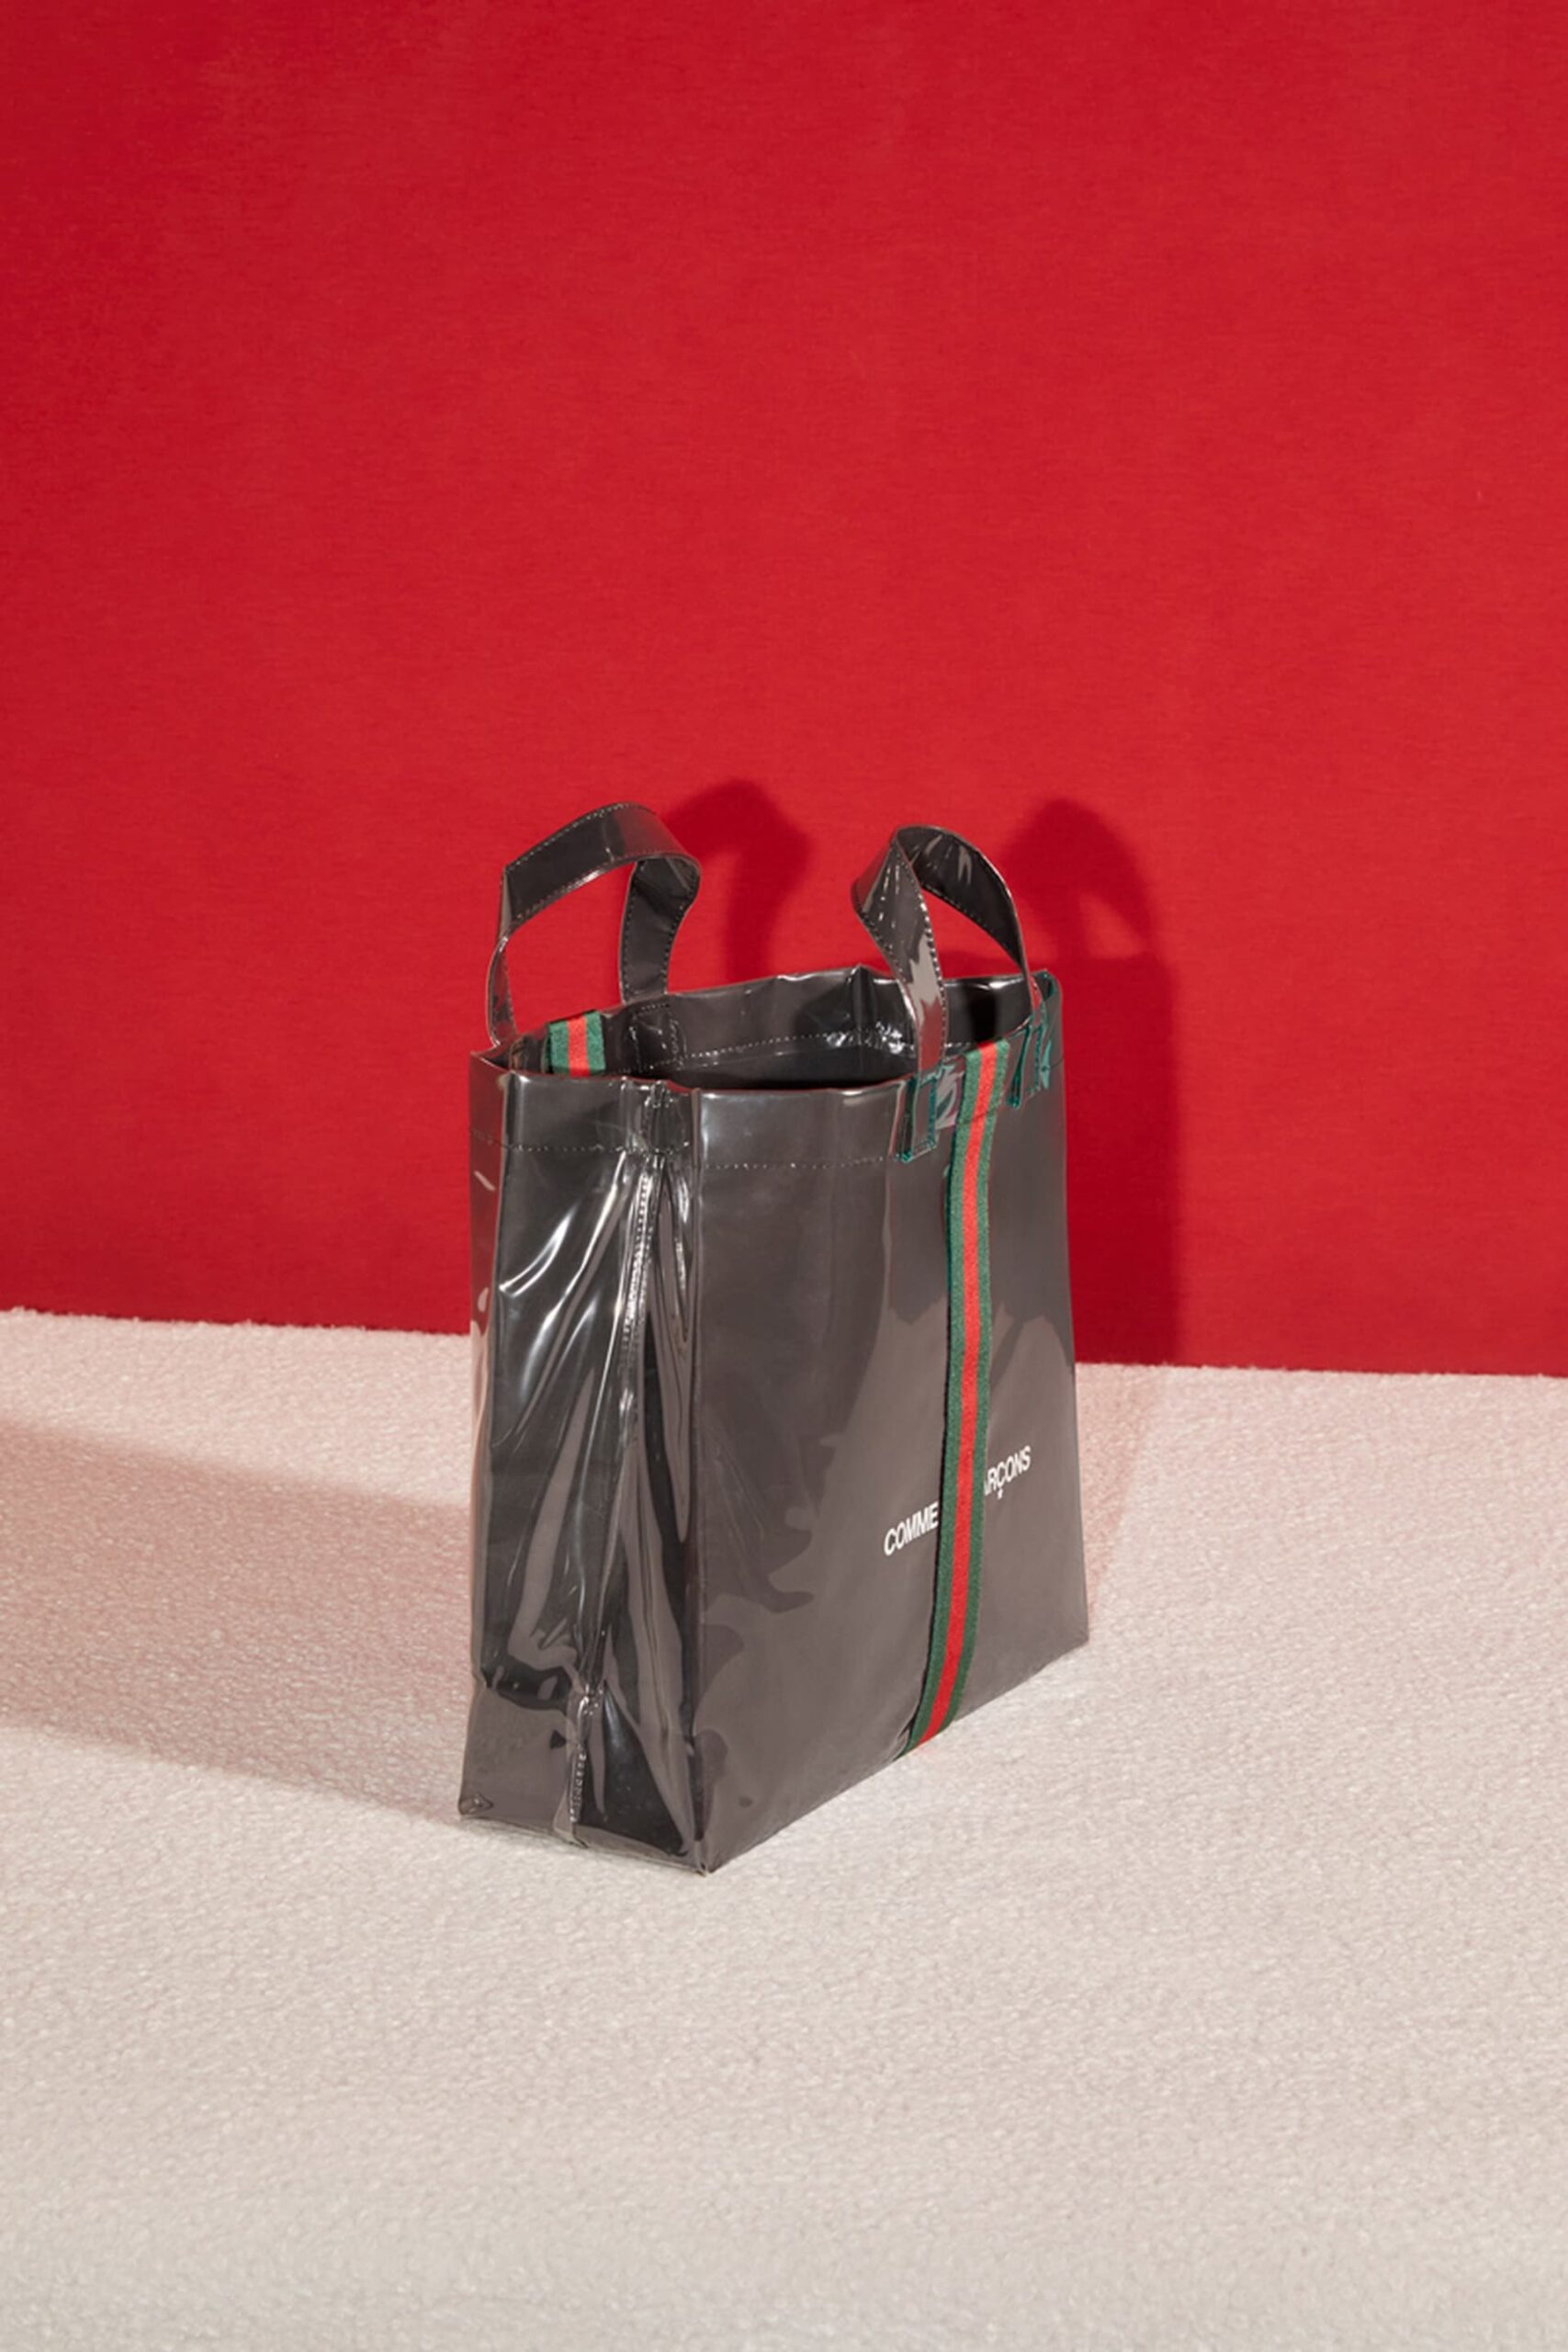 Gucci lanzó un tote bag en colaboración de Comme des Garçons